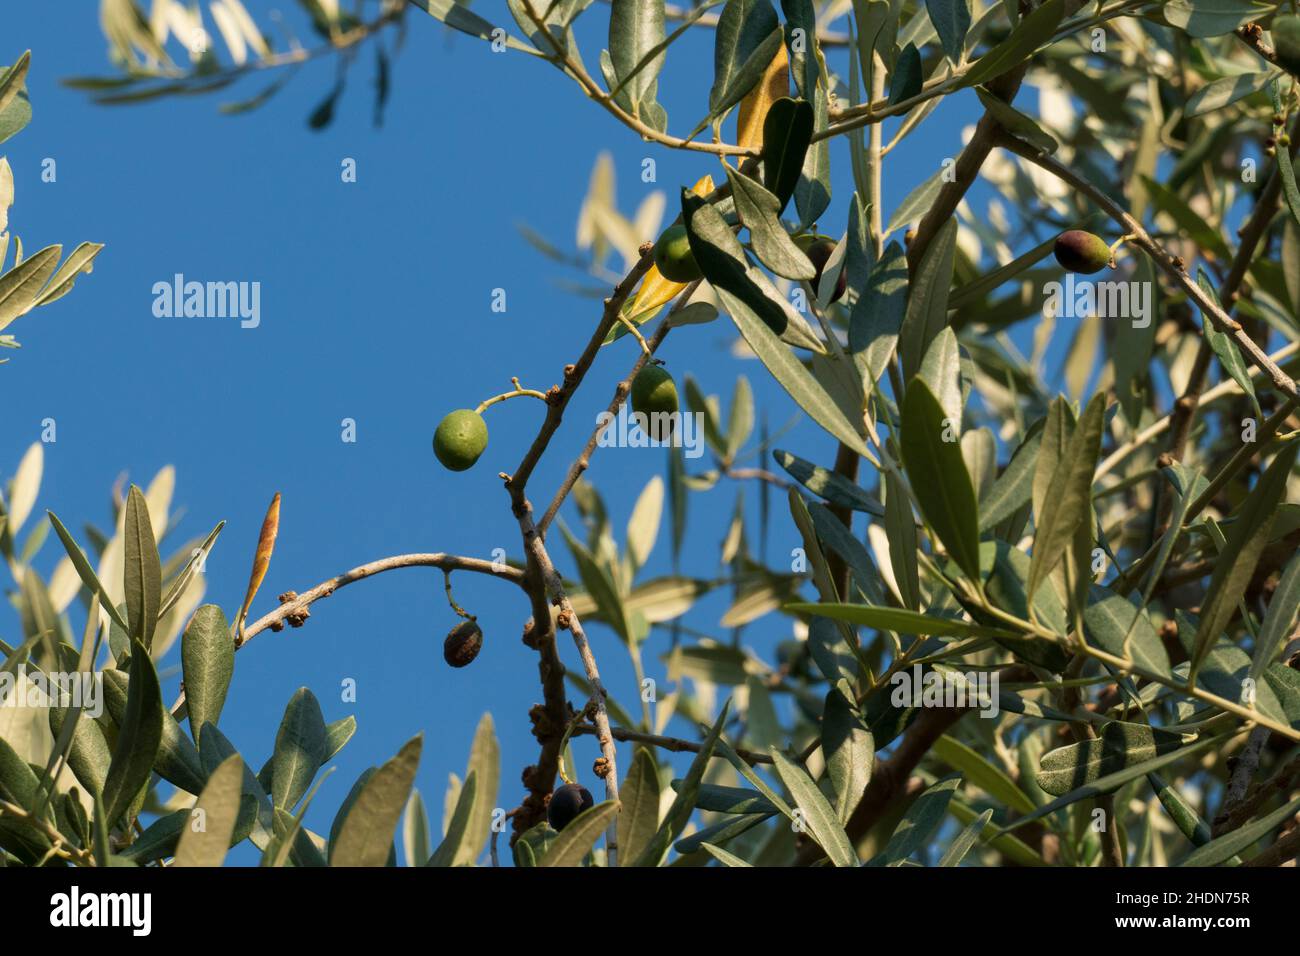 Oliven Früchte mit Blättern, hängen am Baum in einem Olivenhain Foto Stock